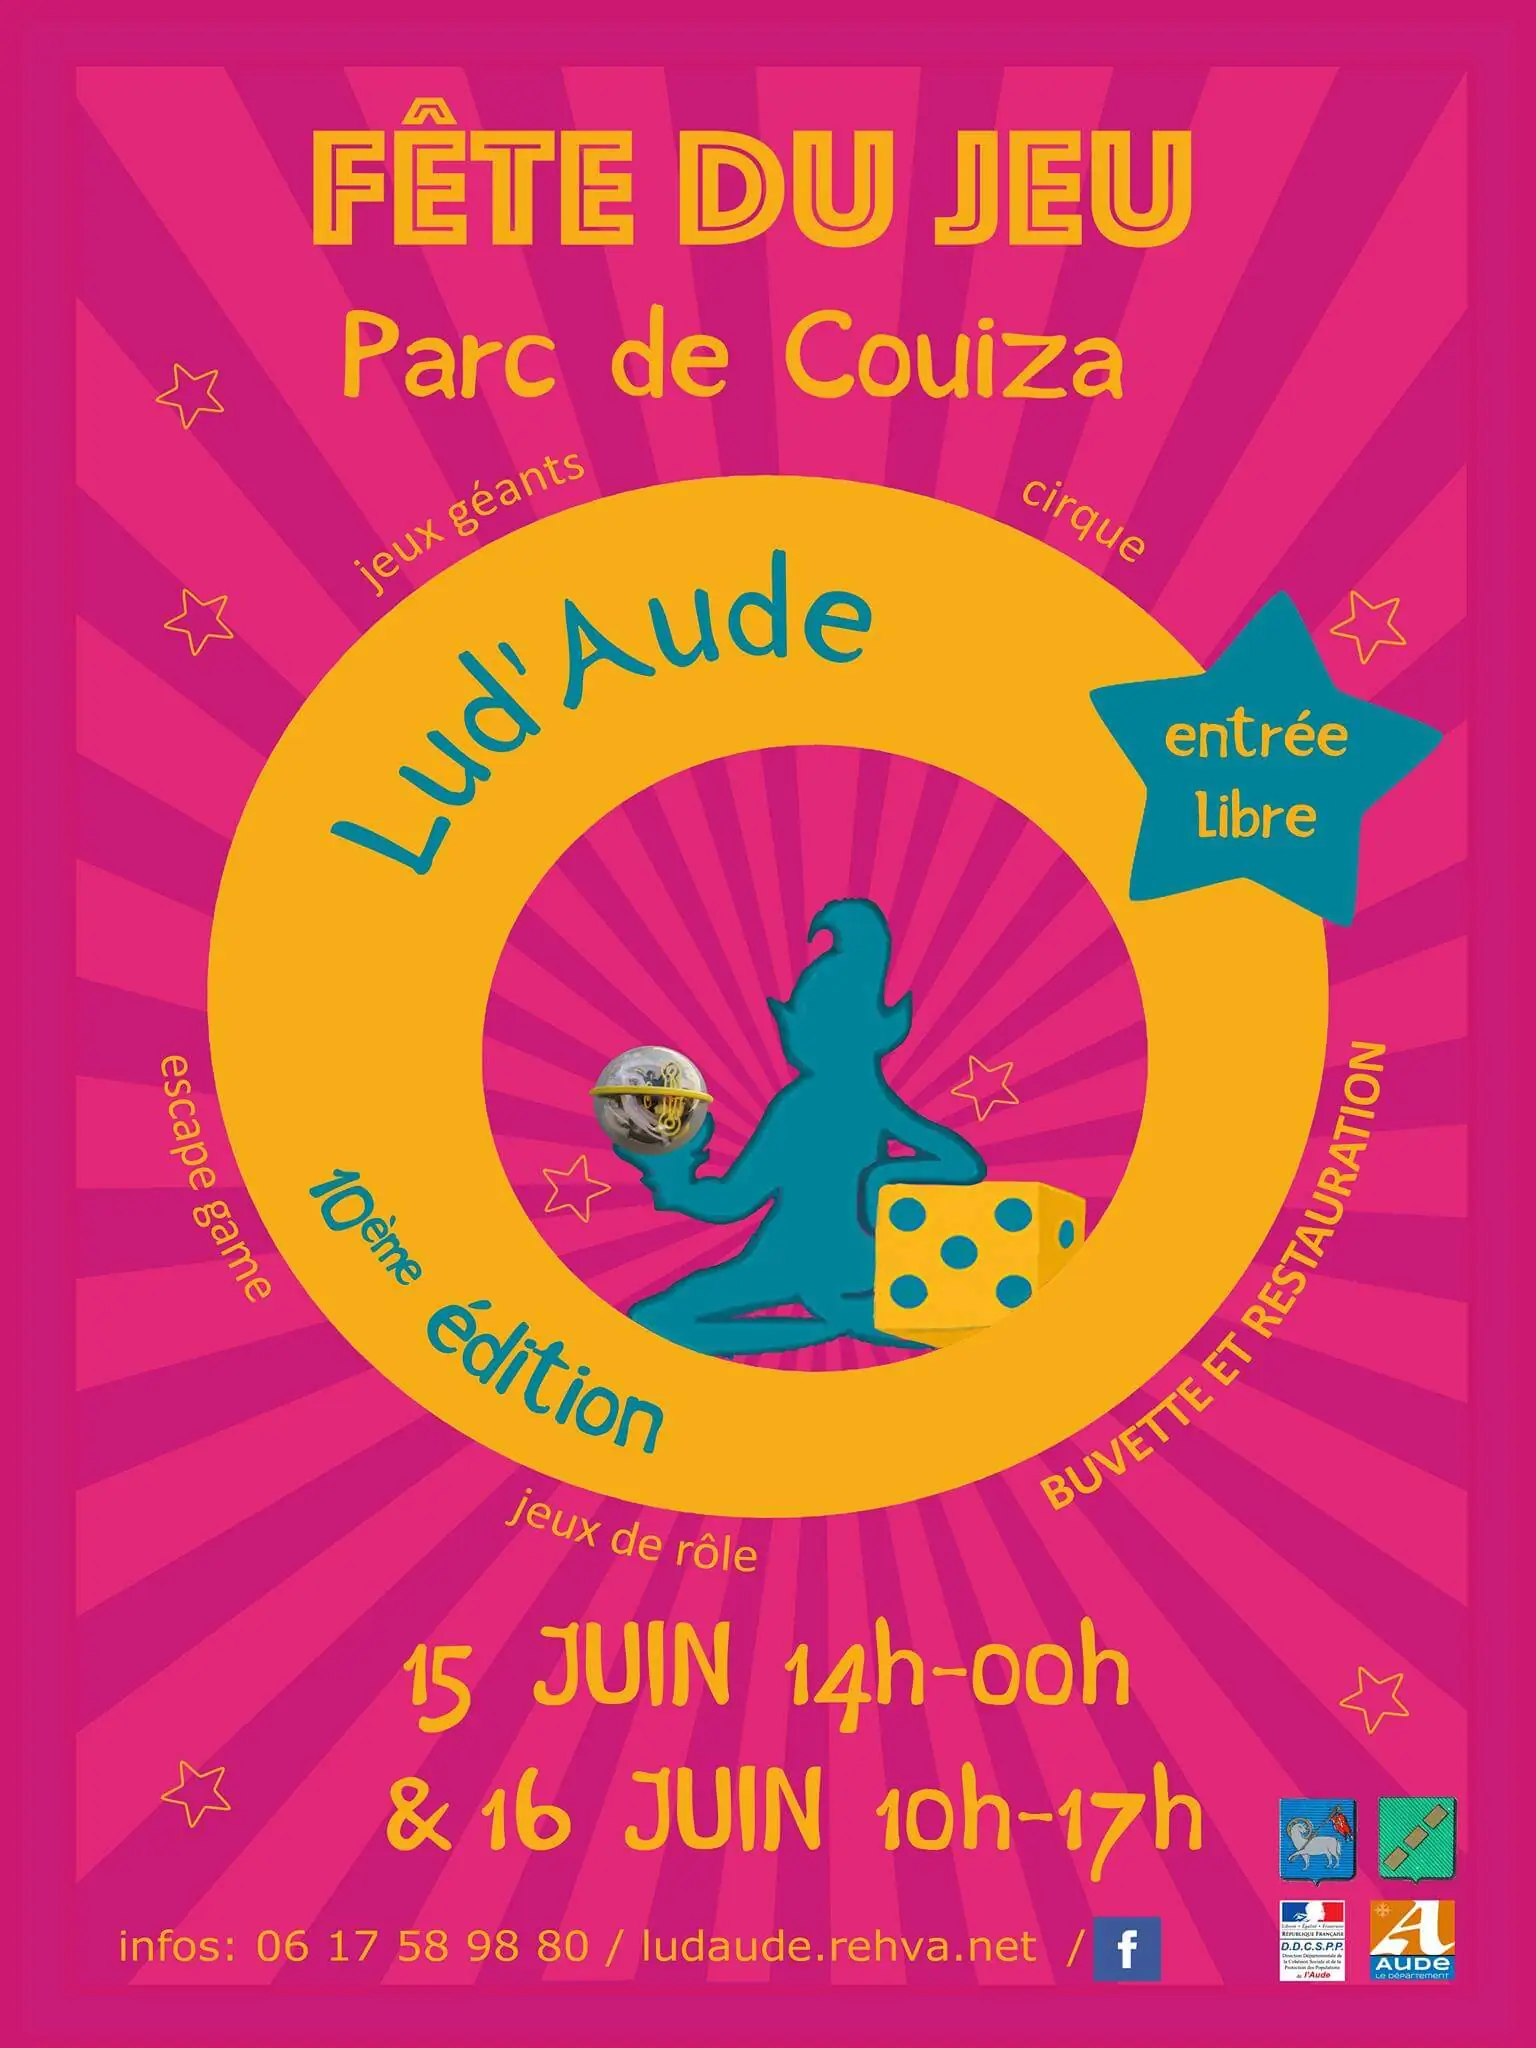 Affiche officielle FÃªte du Jeu de Lud'Aude 2020